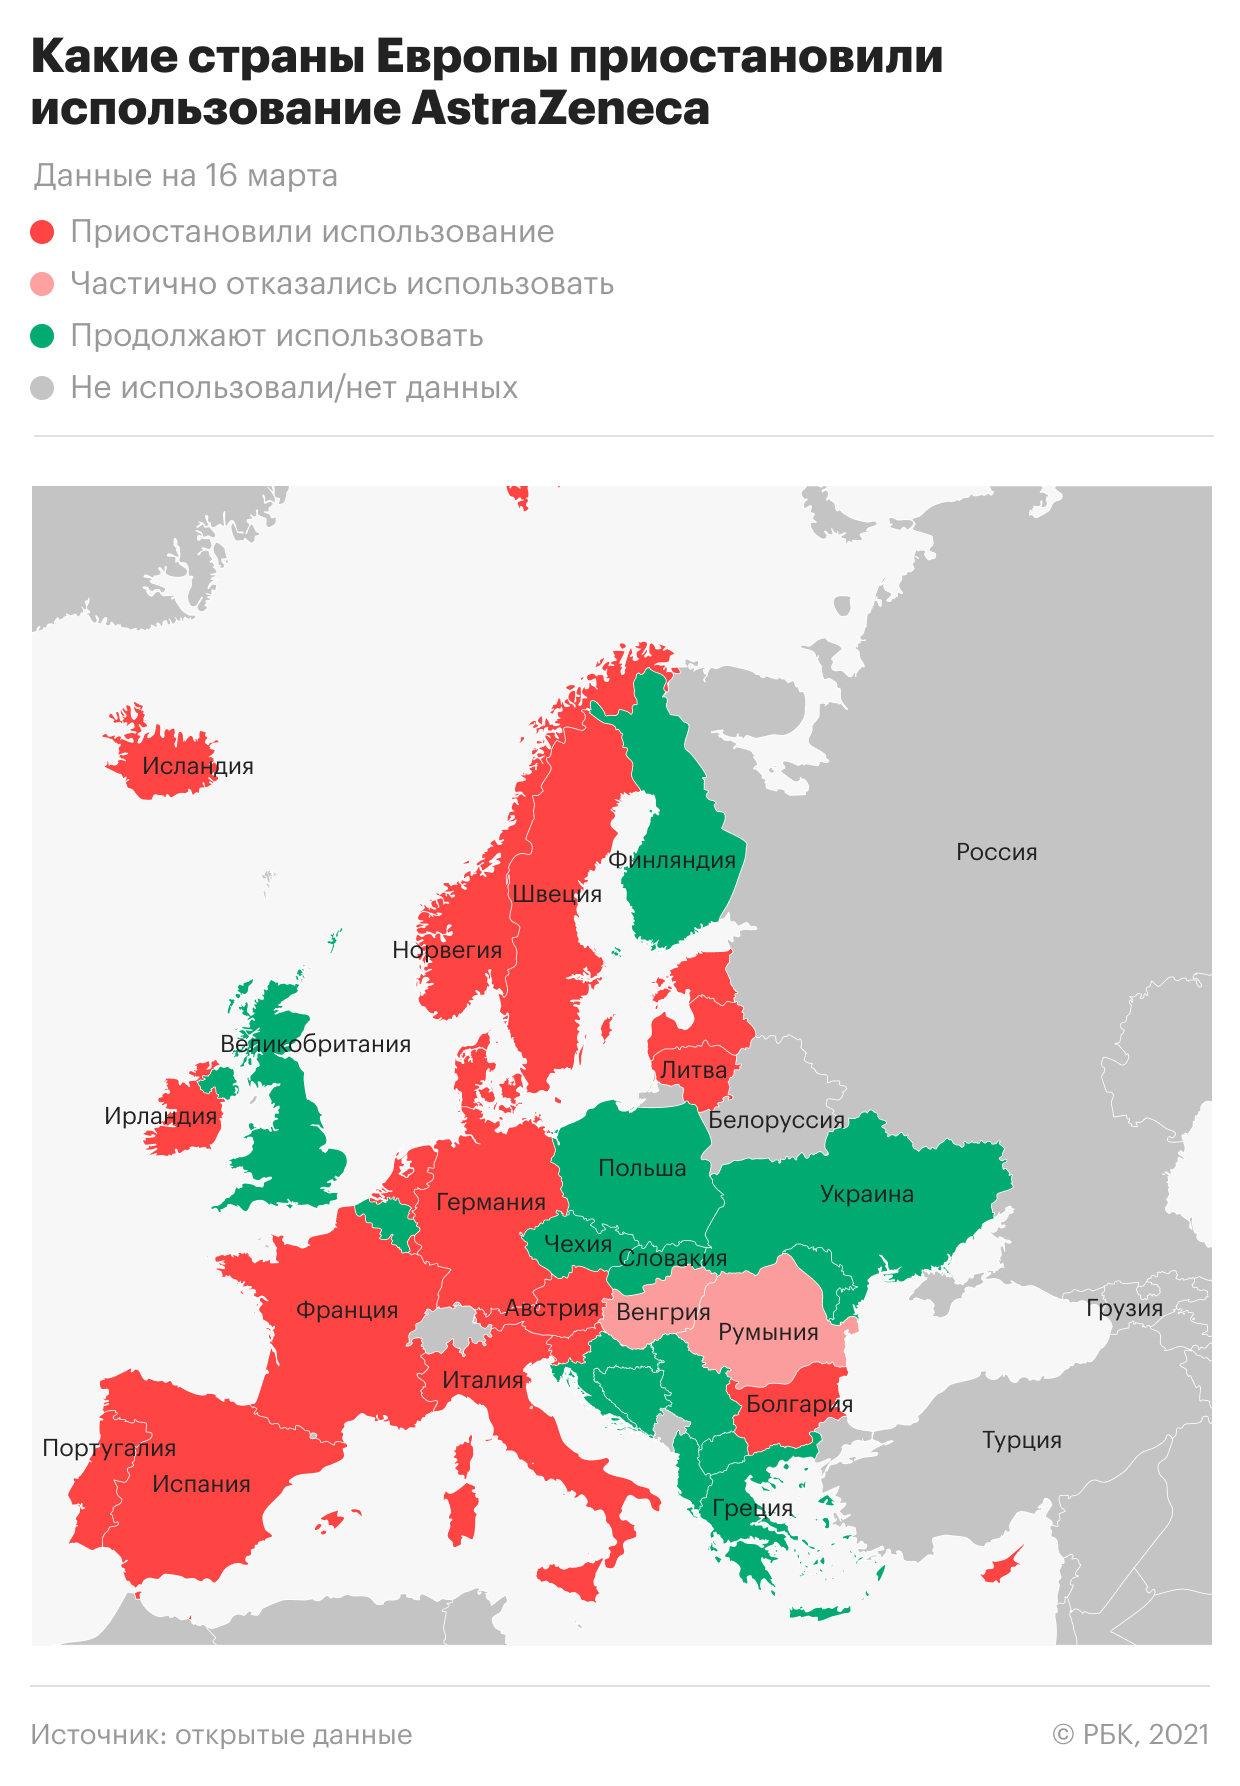 Какие страны Европы отказываются от AstraZeneca. Инфографика